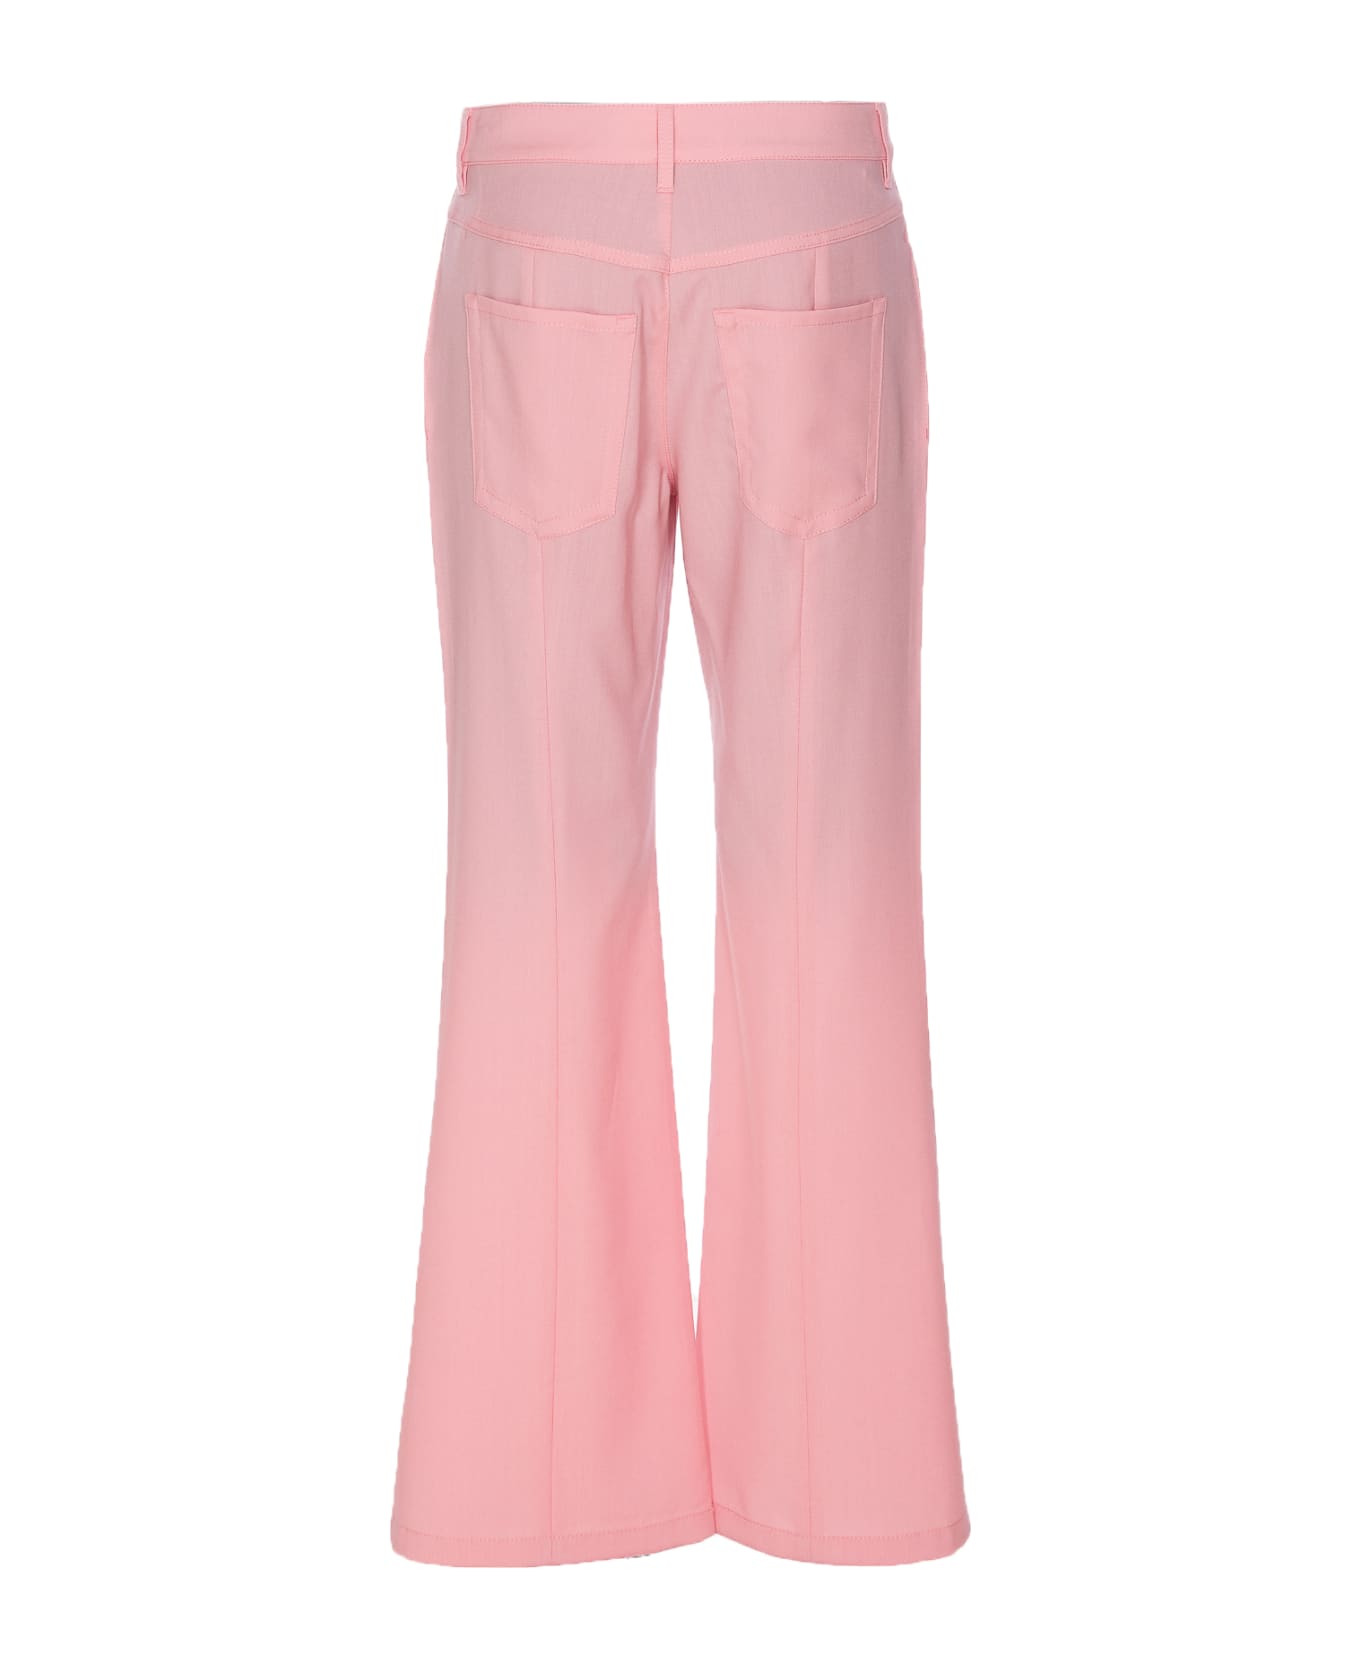 Marni Flared Pants - Pink ボトムス